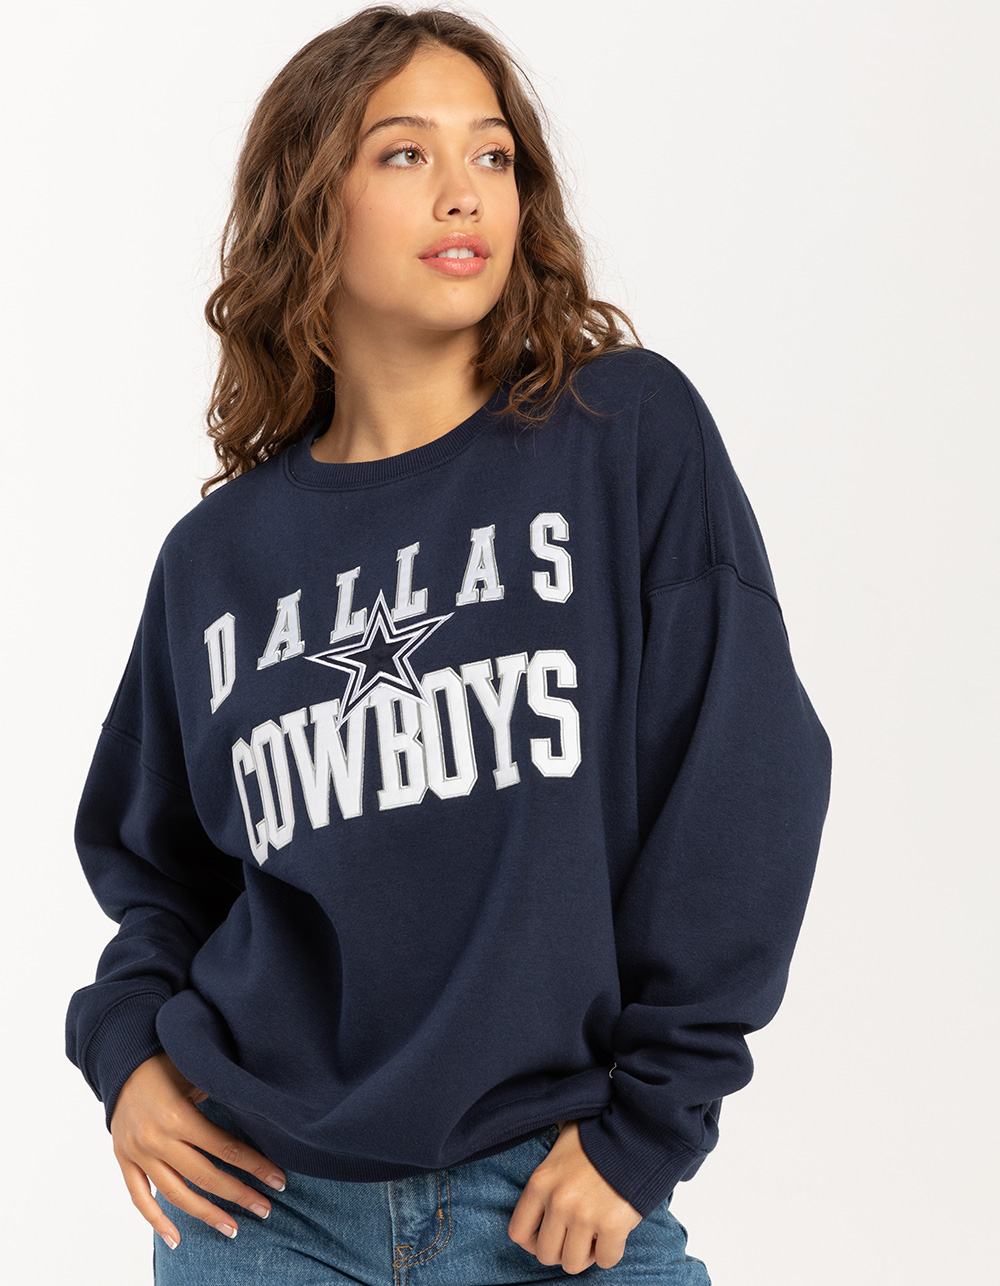 Game Day Sweatshirt, Crewneck Black, Dallas Cowboys – Moving